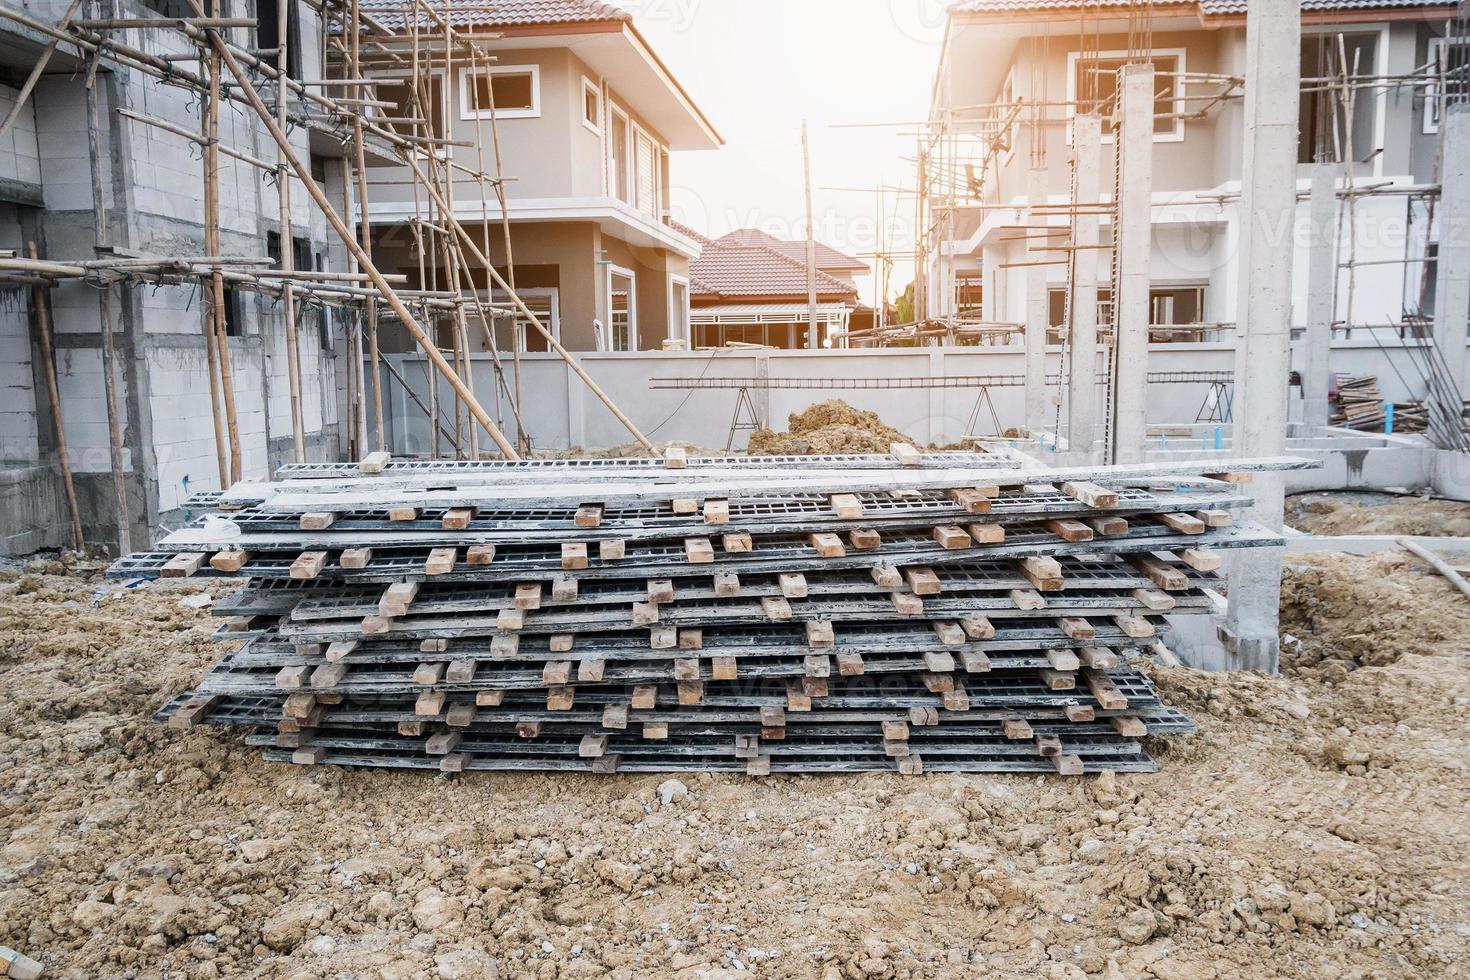 installation av cementformningsramar till nybyggnation av hus på byggarbetsplats, fastighetsutveckling foto